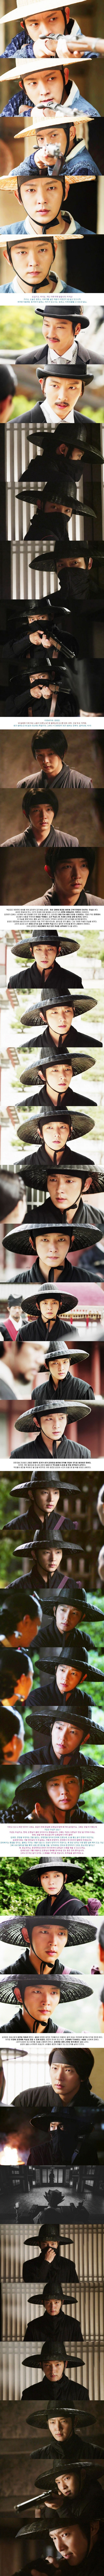 episode 16 captures for the Korean drama 'The Joseon Shooter'